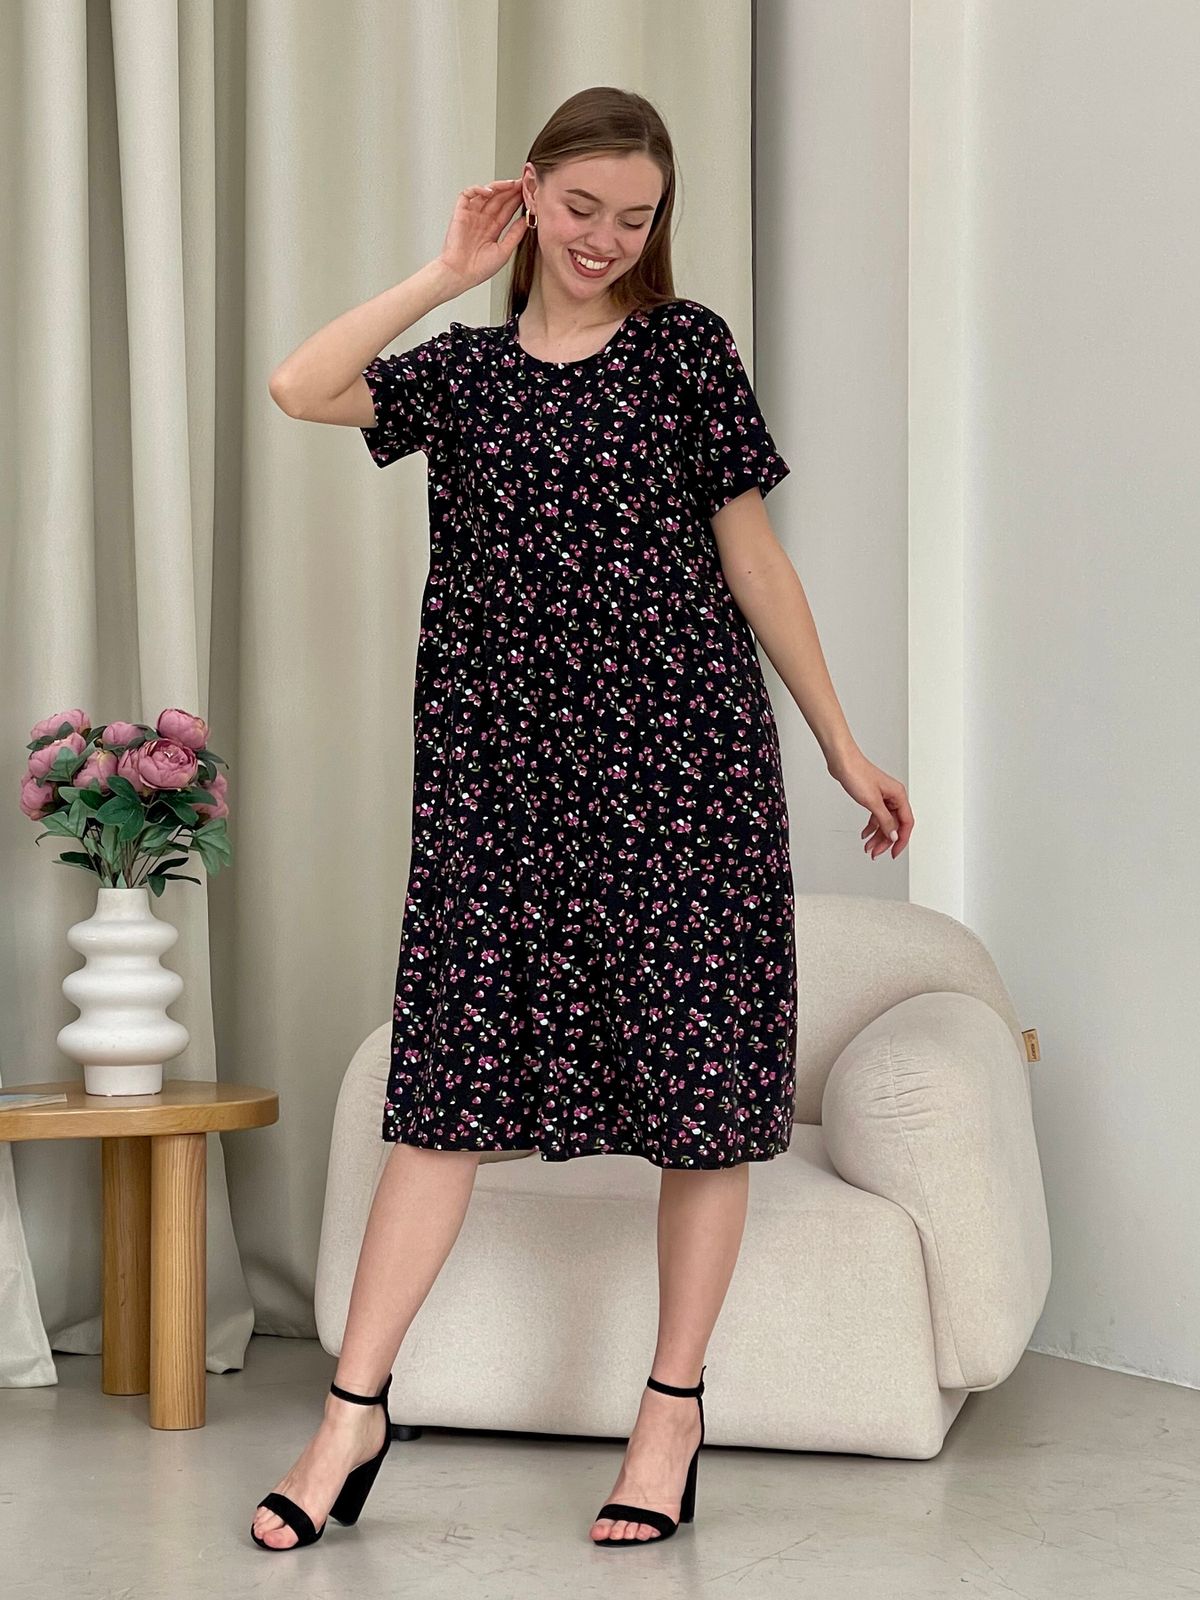 Купить Летнее платье с рюшами в цветочек чорное Merlini Казерта 700001261 размер 42-44 (S-M) в интернет-магазине